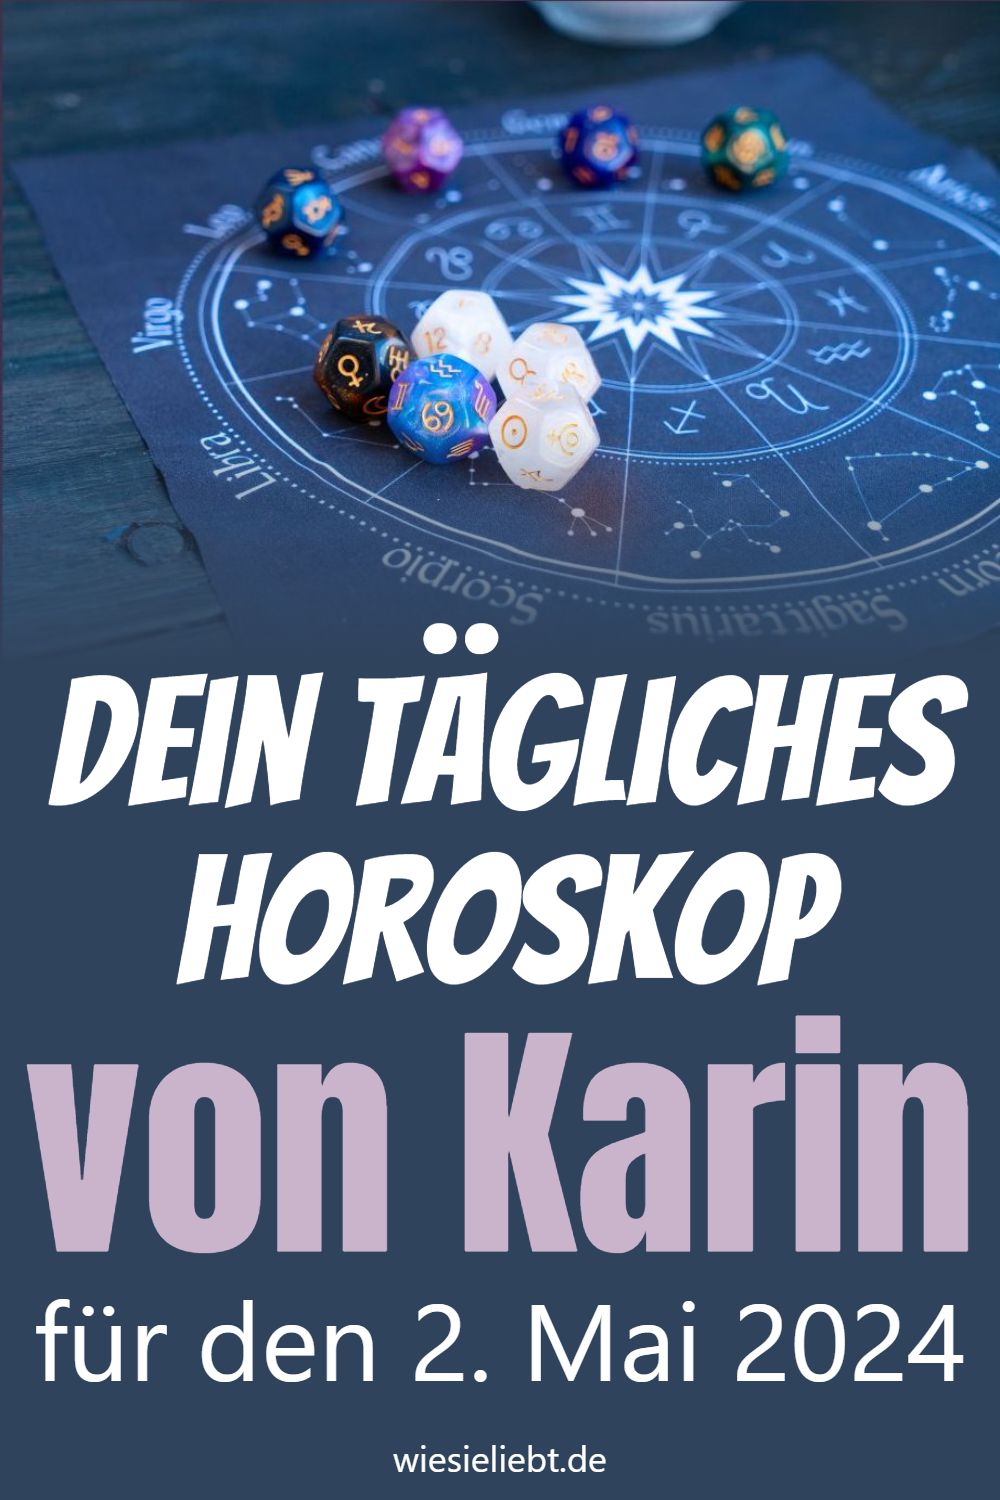 Dein tägliches Horoskop von Karin für den 2. Mai 2024